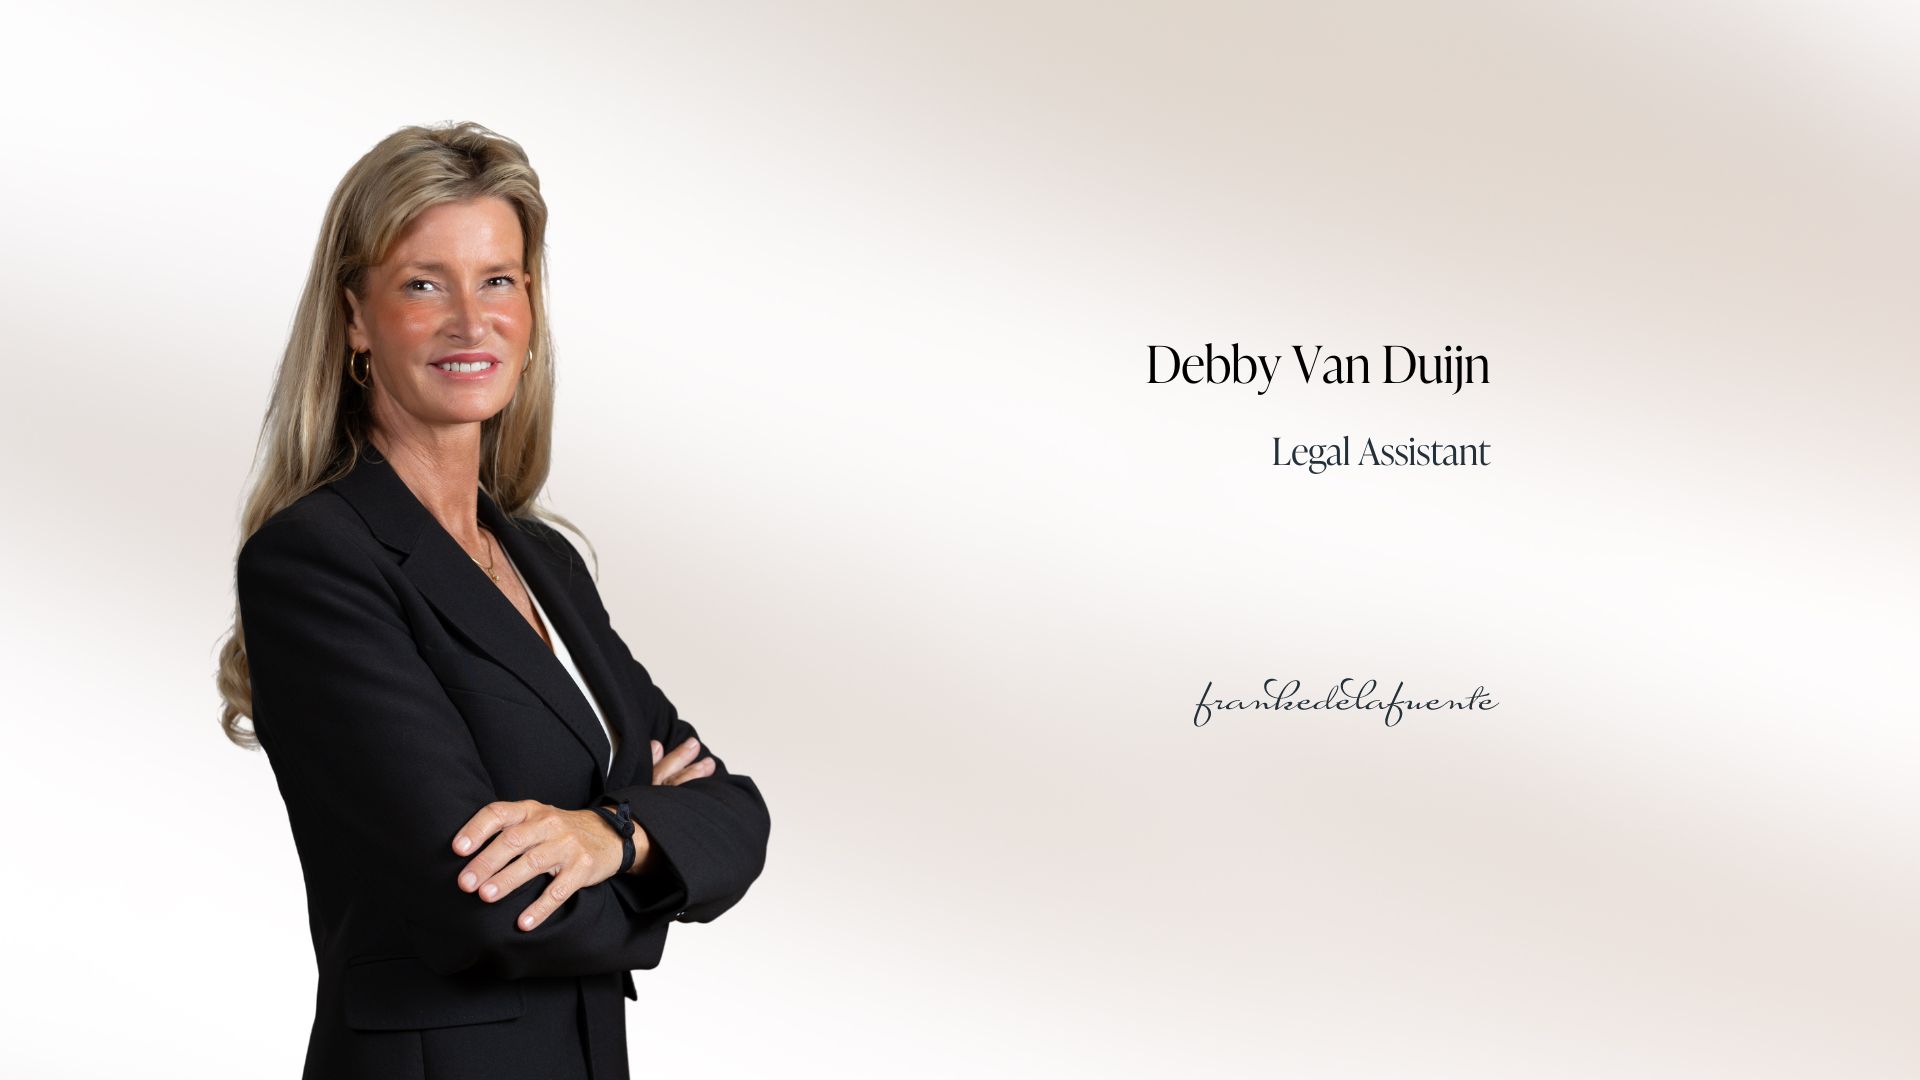 Debby Van Duijn